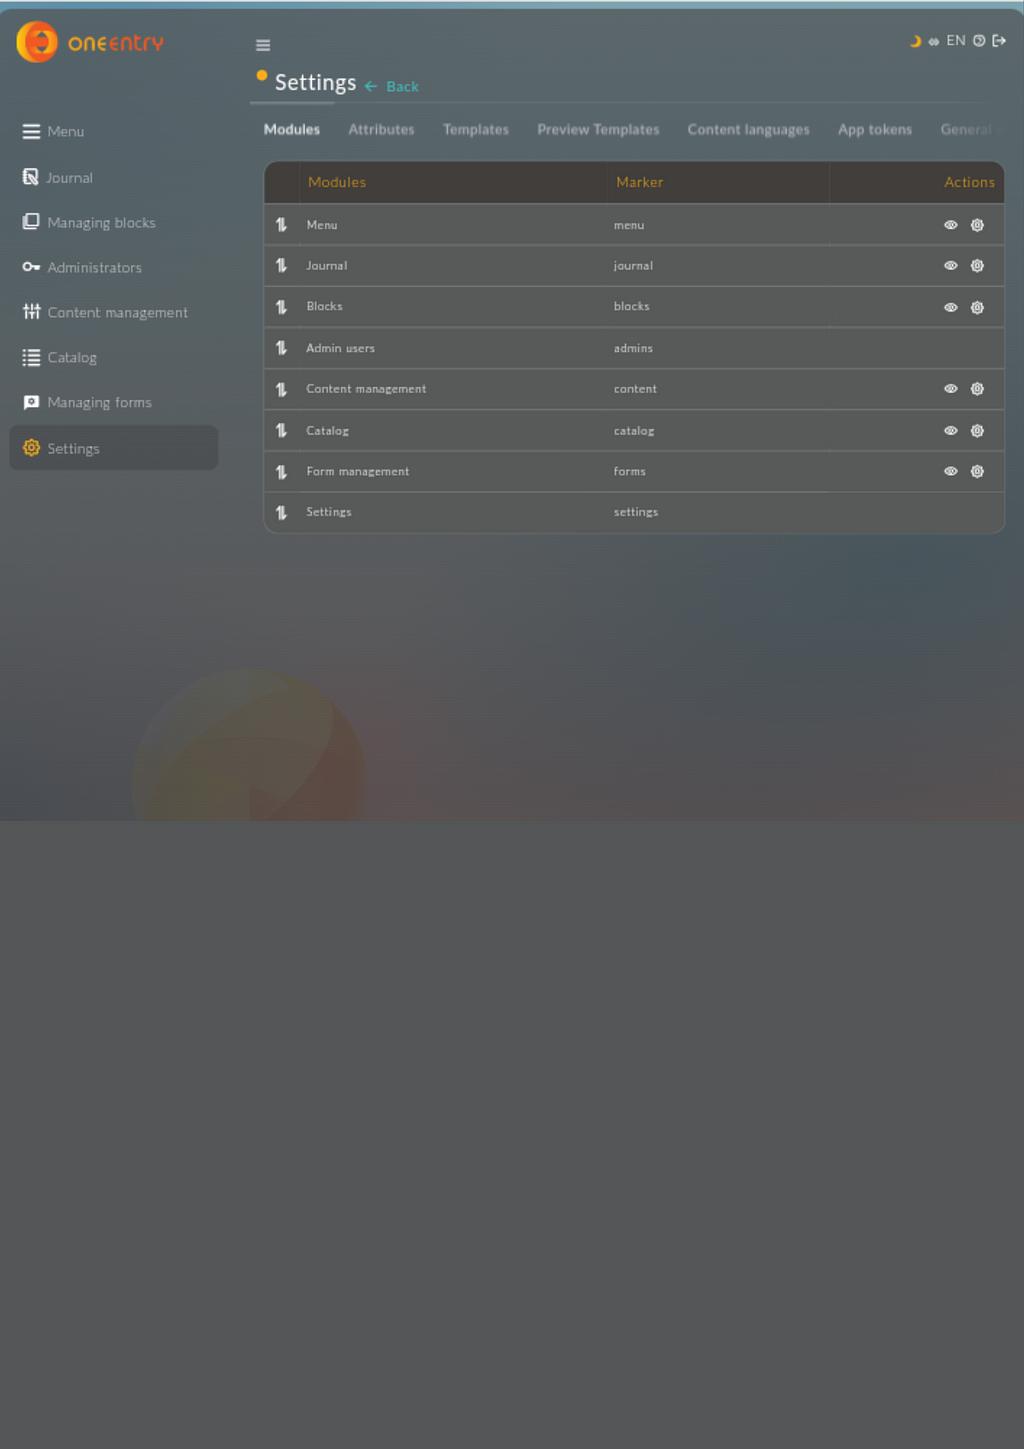 A screenshot of the Settings dashboard